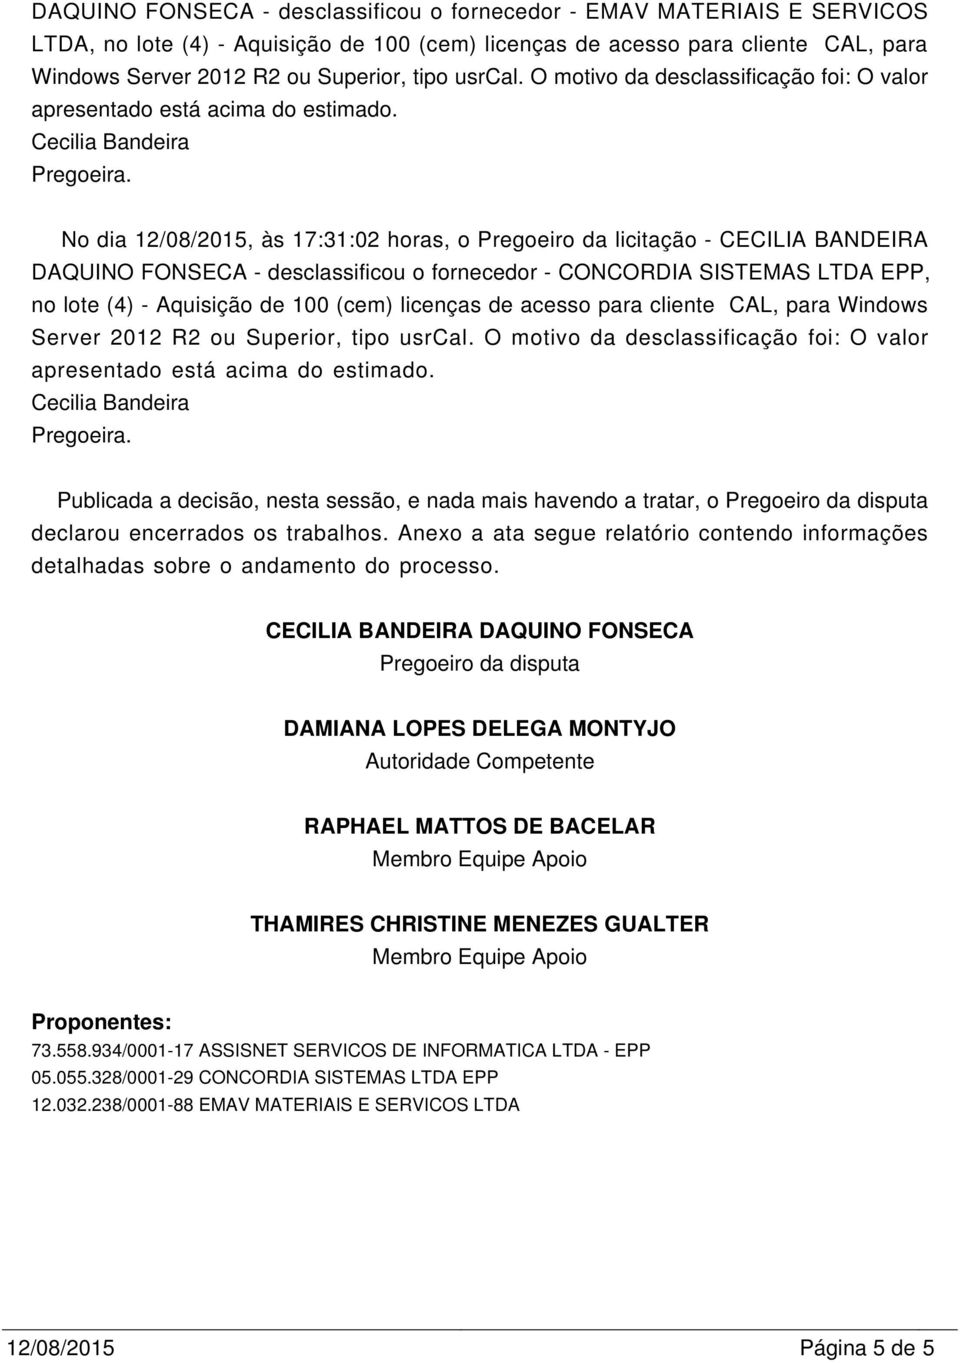 No dia 12/08/2015, às 17:31:02 horas, o Pregoeiro da licitação - CECILIA BANDEIRA DAQUINO FONSECA - desclassificou o fornecedor - CONCORDIA SISTEMAS LTDA EPP, no lote (4) - Aquisição de 100 (cem)